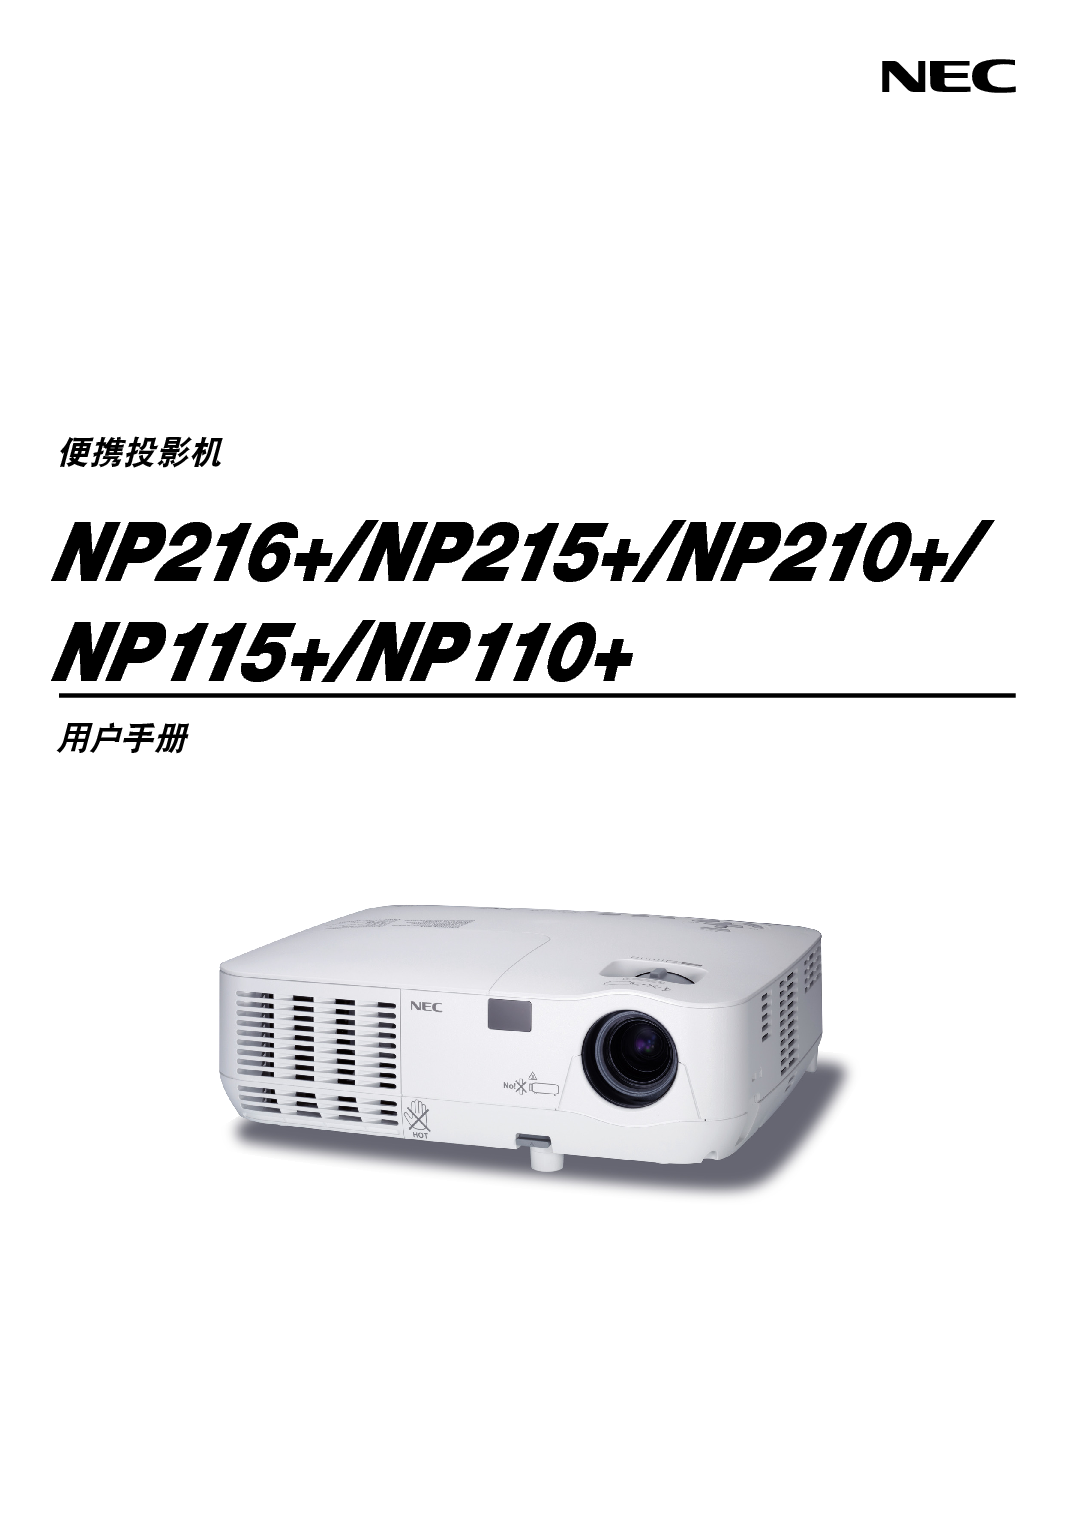 NEC NP110+ 用户手册 封面